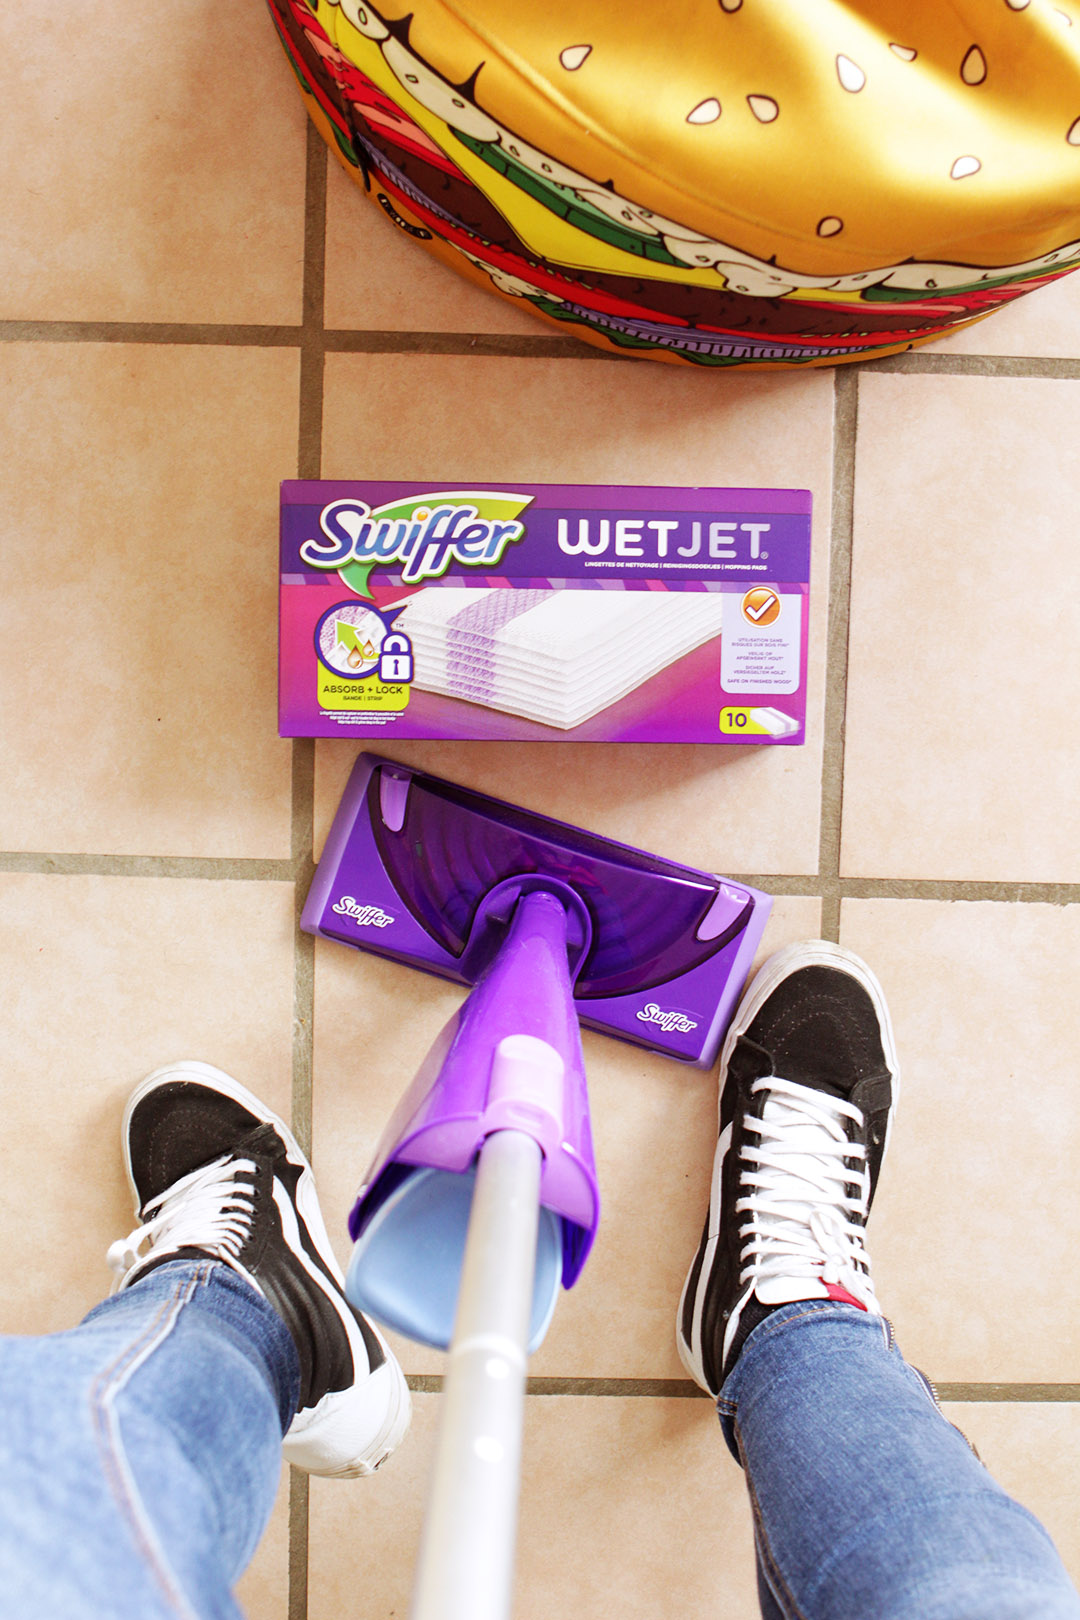 Nettoyage de printemps : mes tips & astuces avec Swiffer